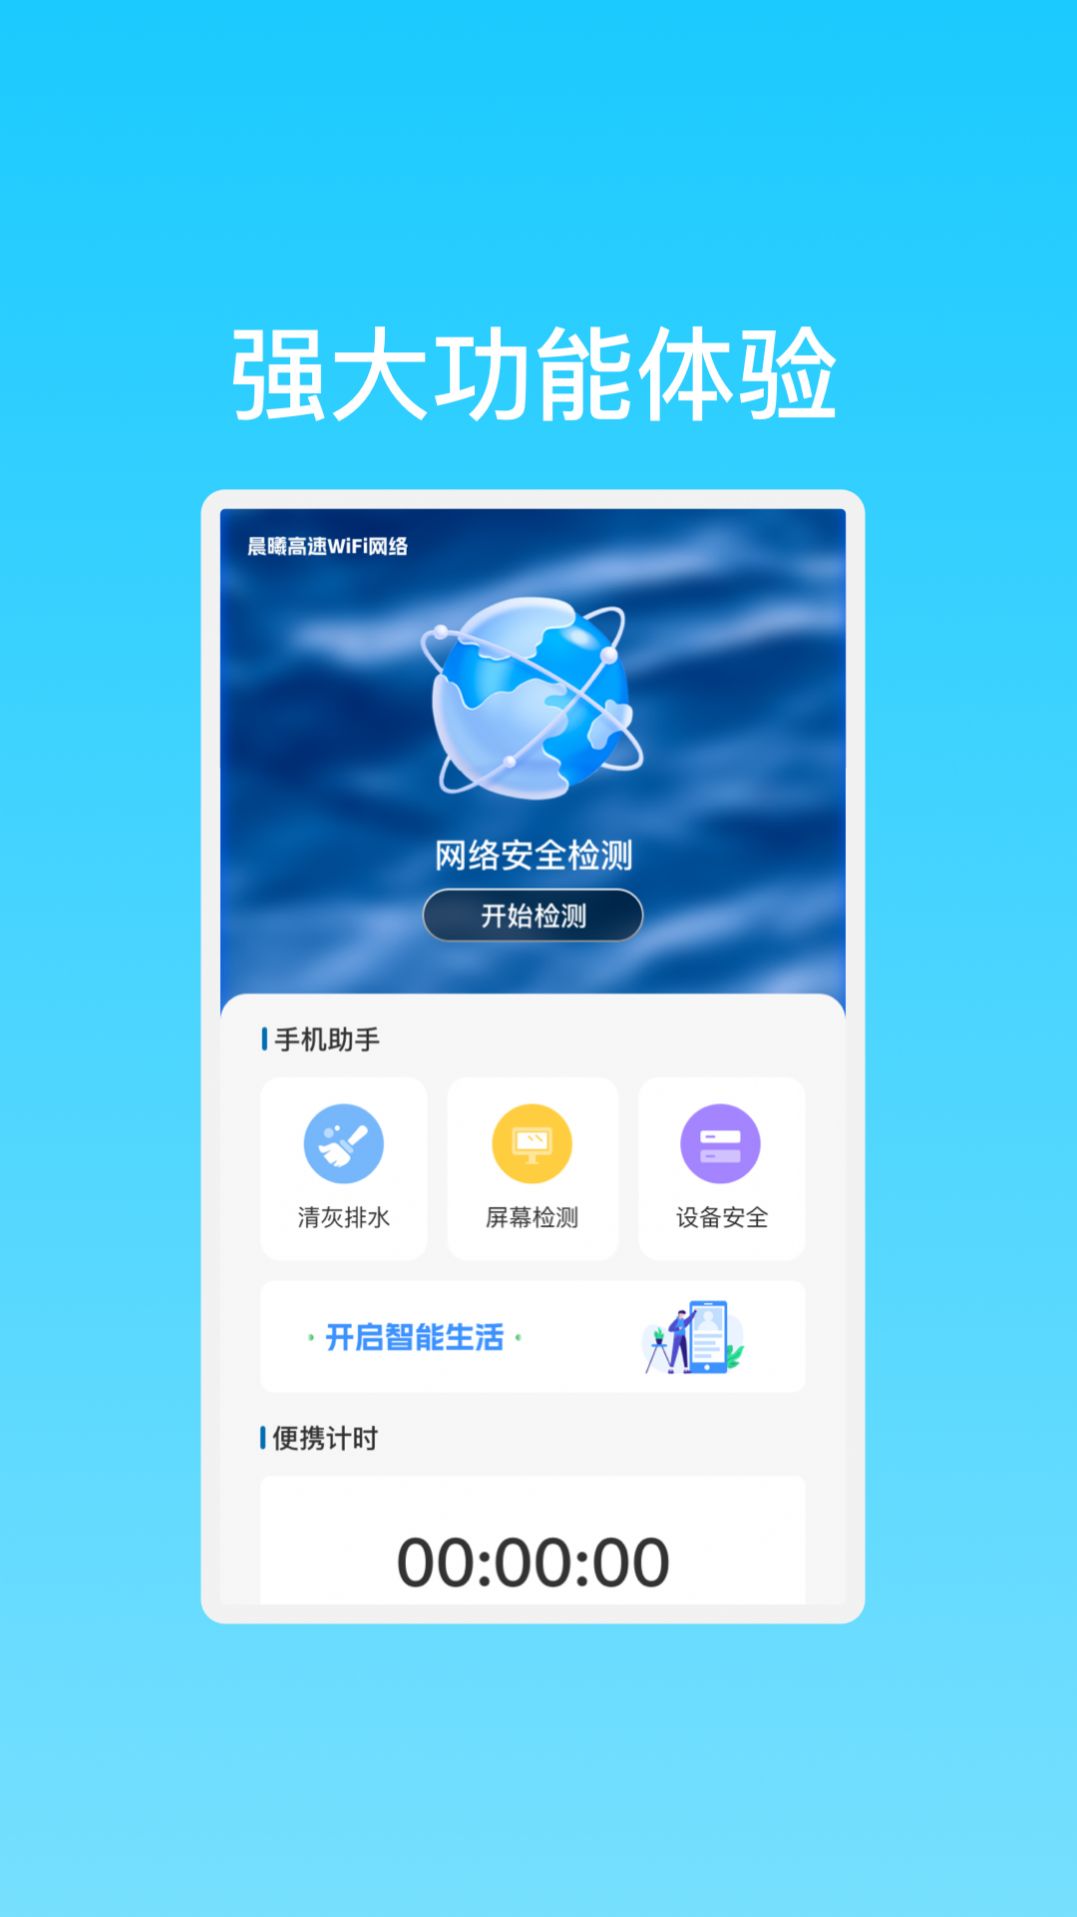 晨曦高速WiFi网络app,晨曦高速WiFi网络最新版